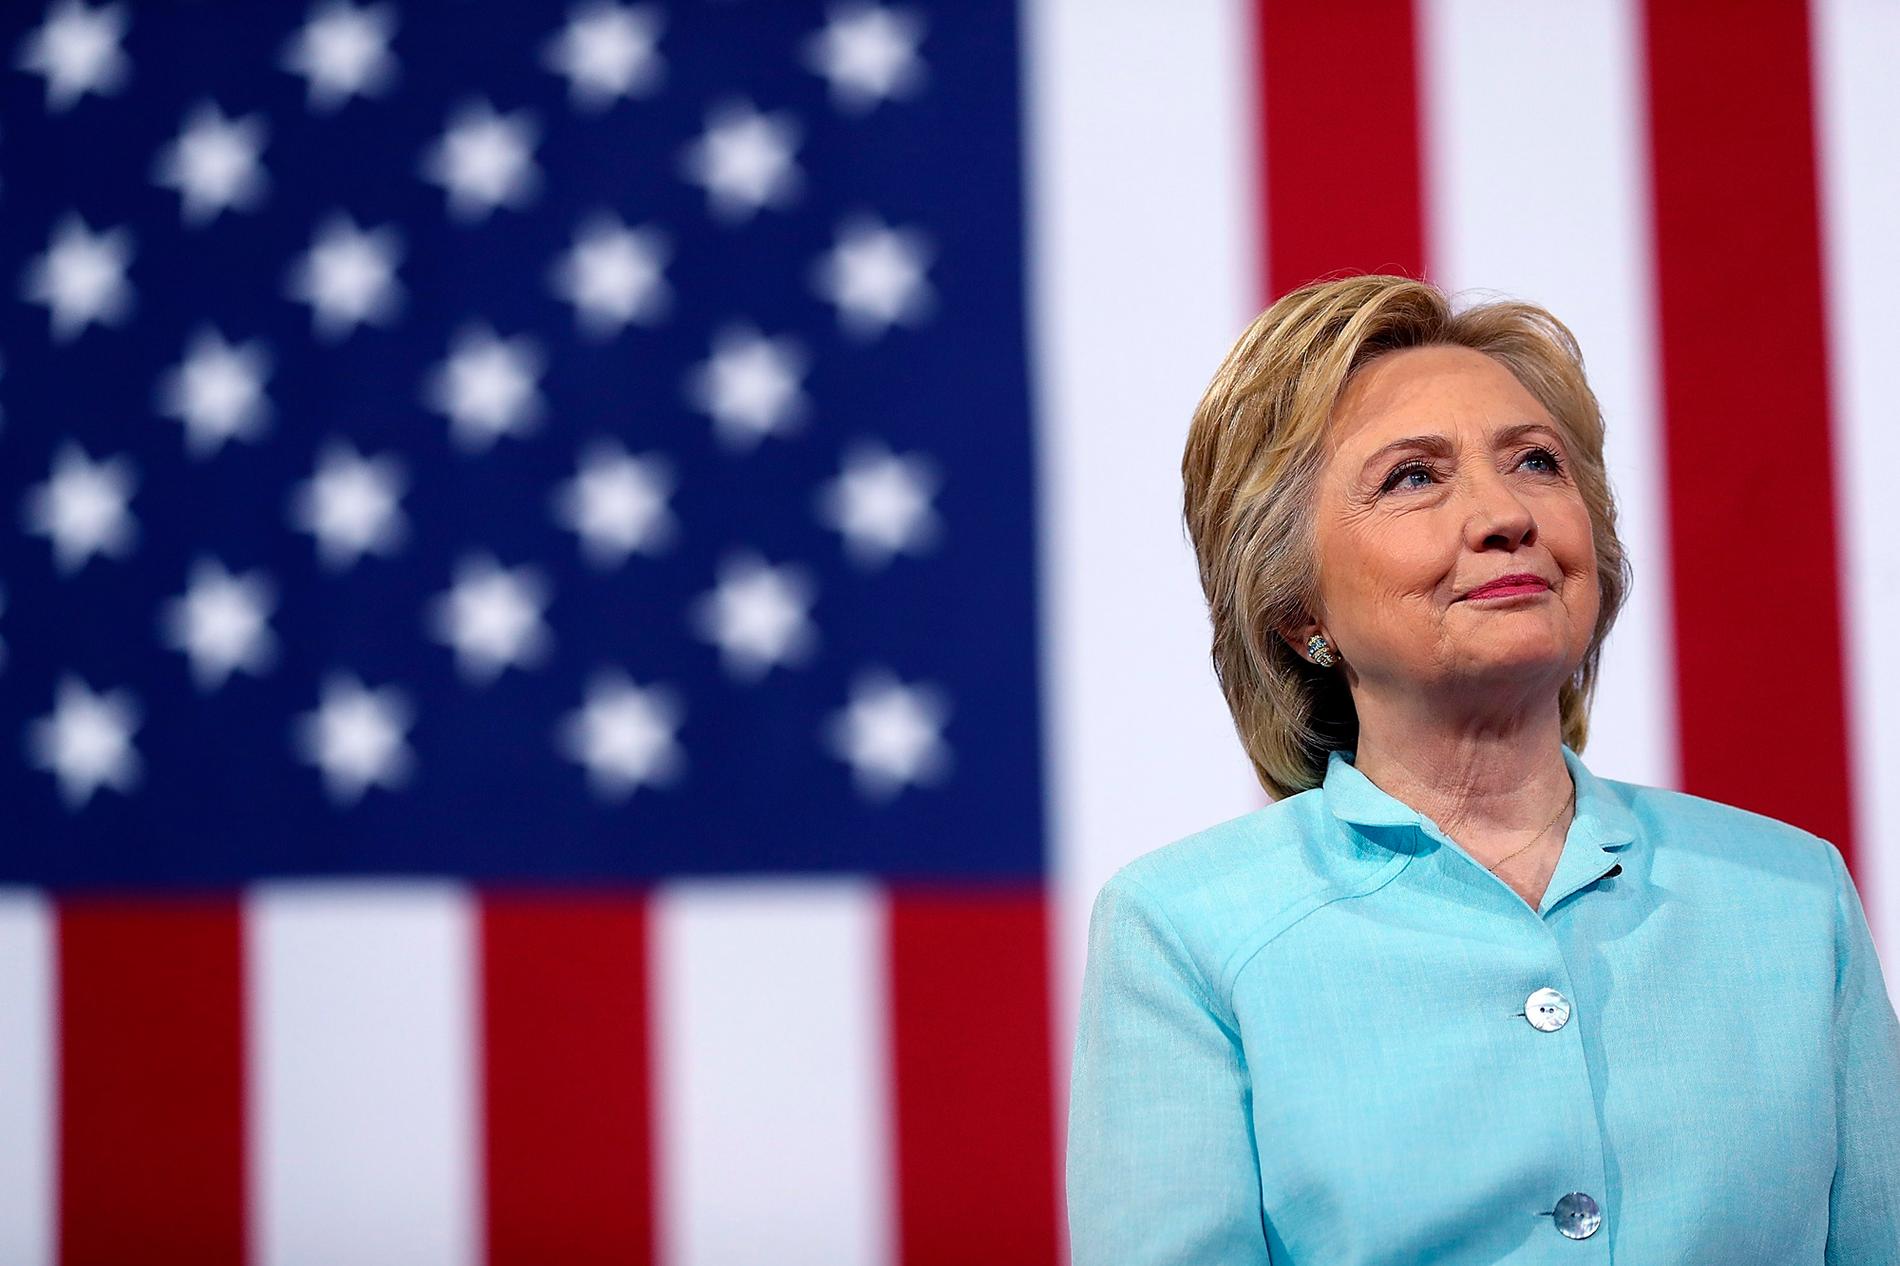 Pest eller kolera Åsa Linderborg menar att Hillary Clinton är den kandidat man måste välja. Foto: TT